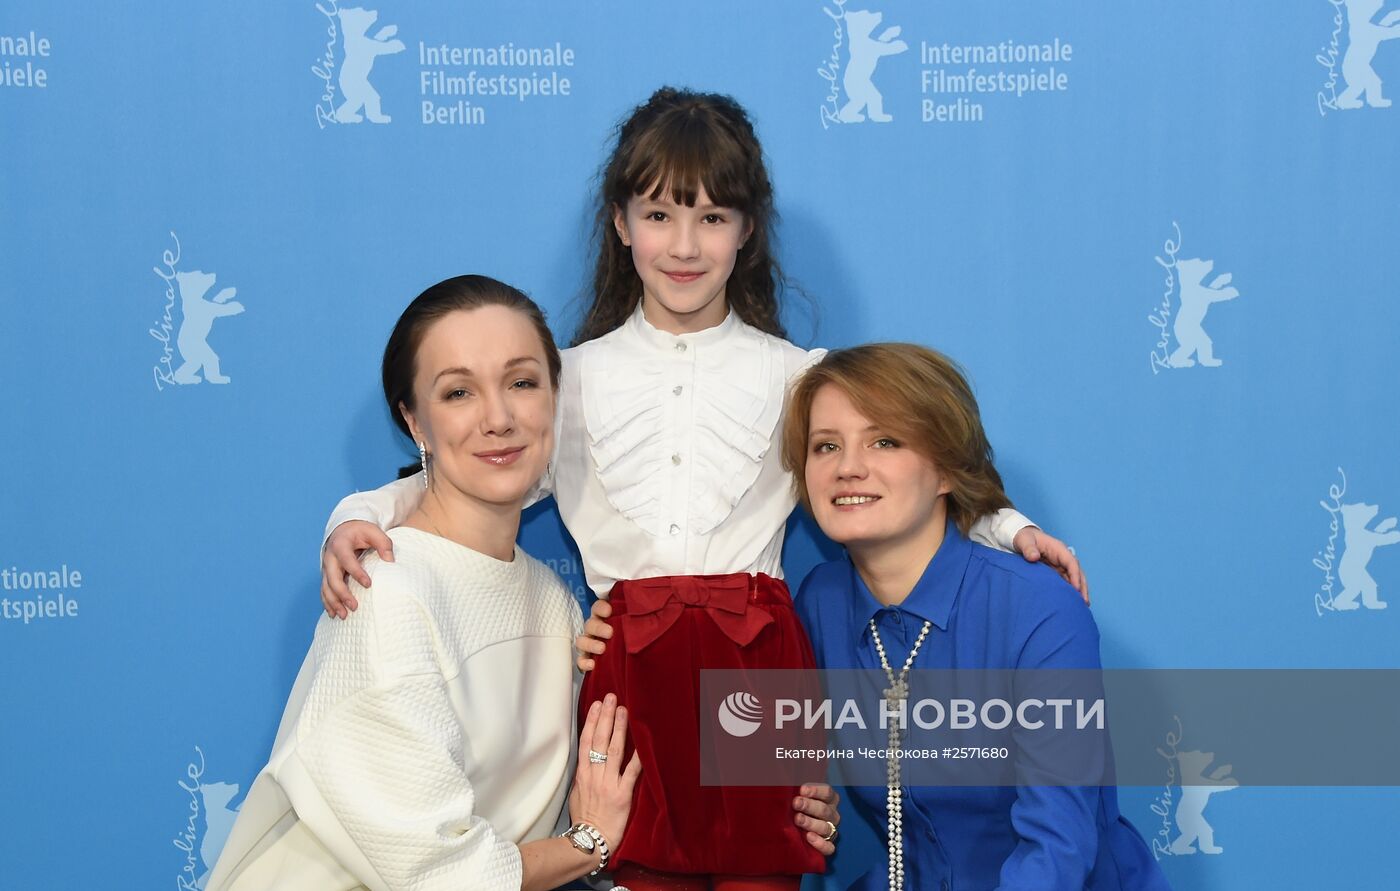 Российский фильм "Пионеры-герои" представили на Берлинском международном кинофестивале